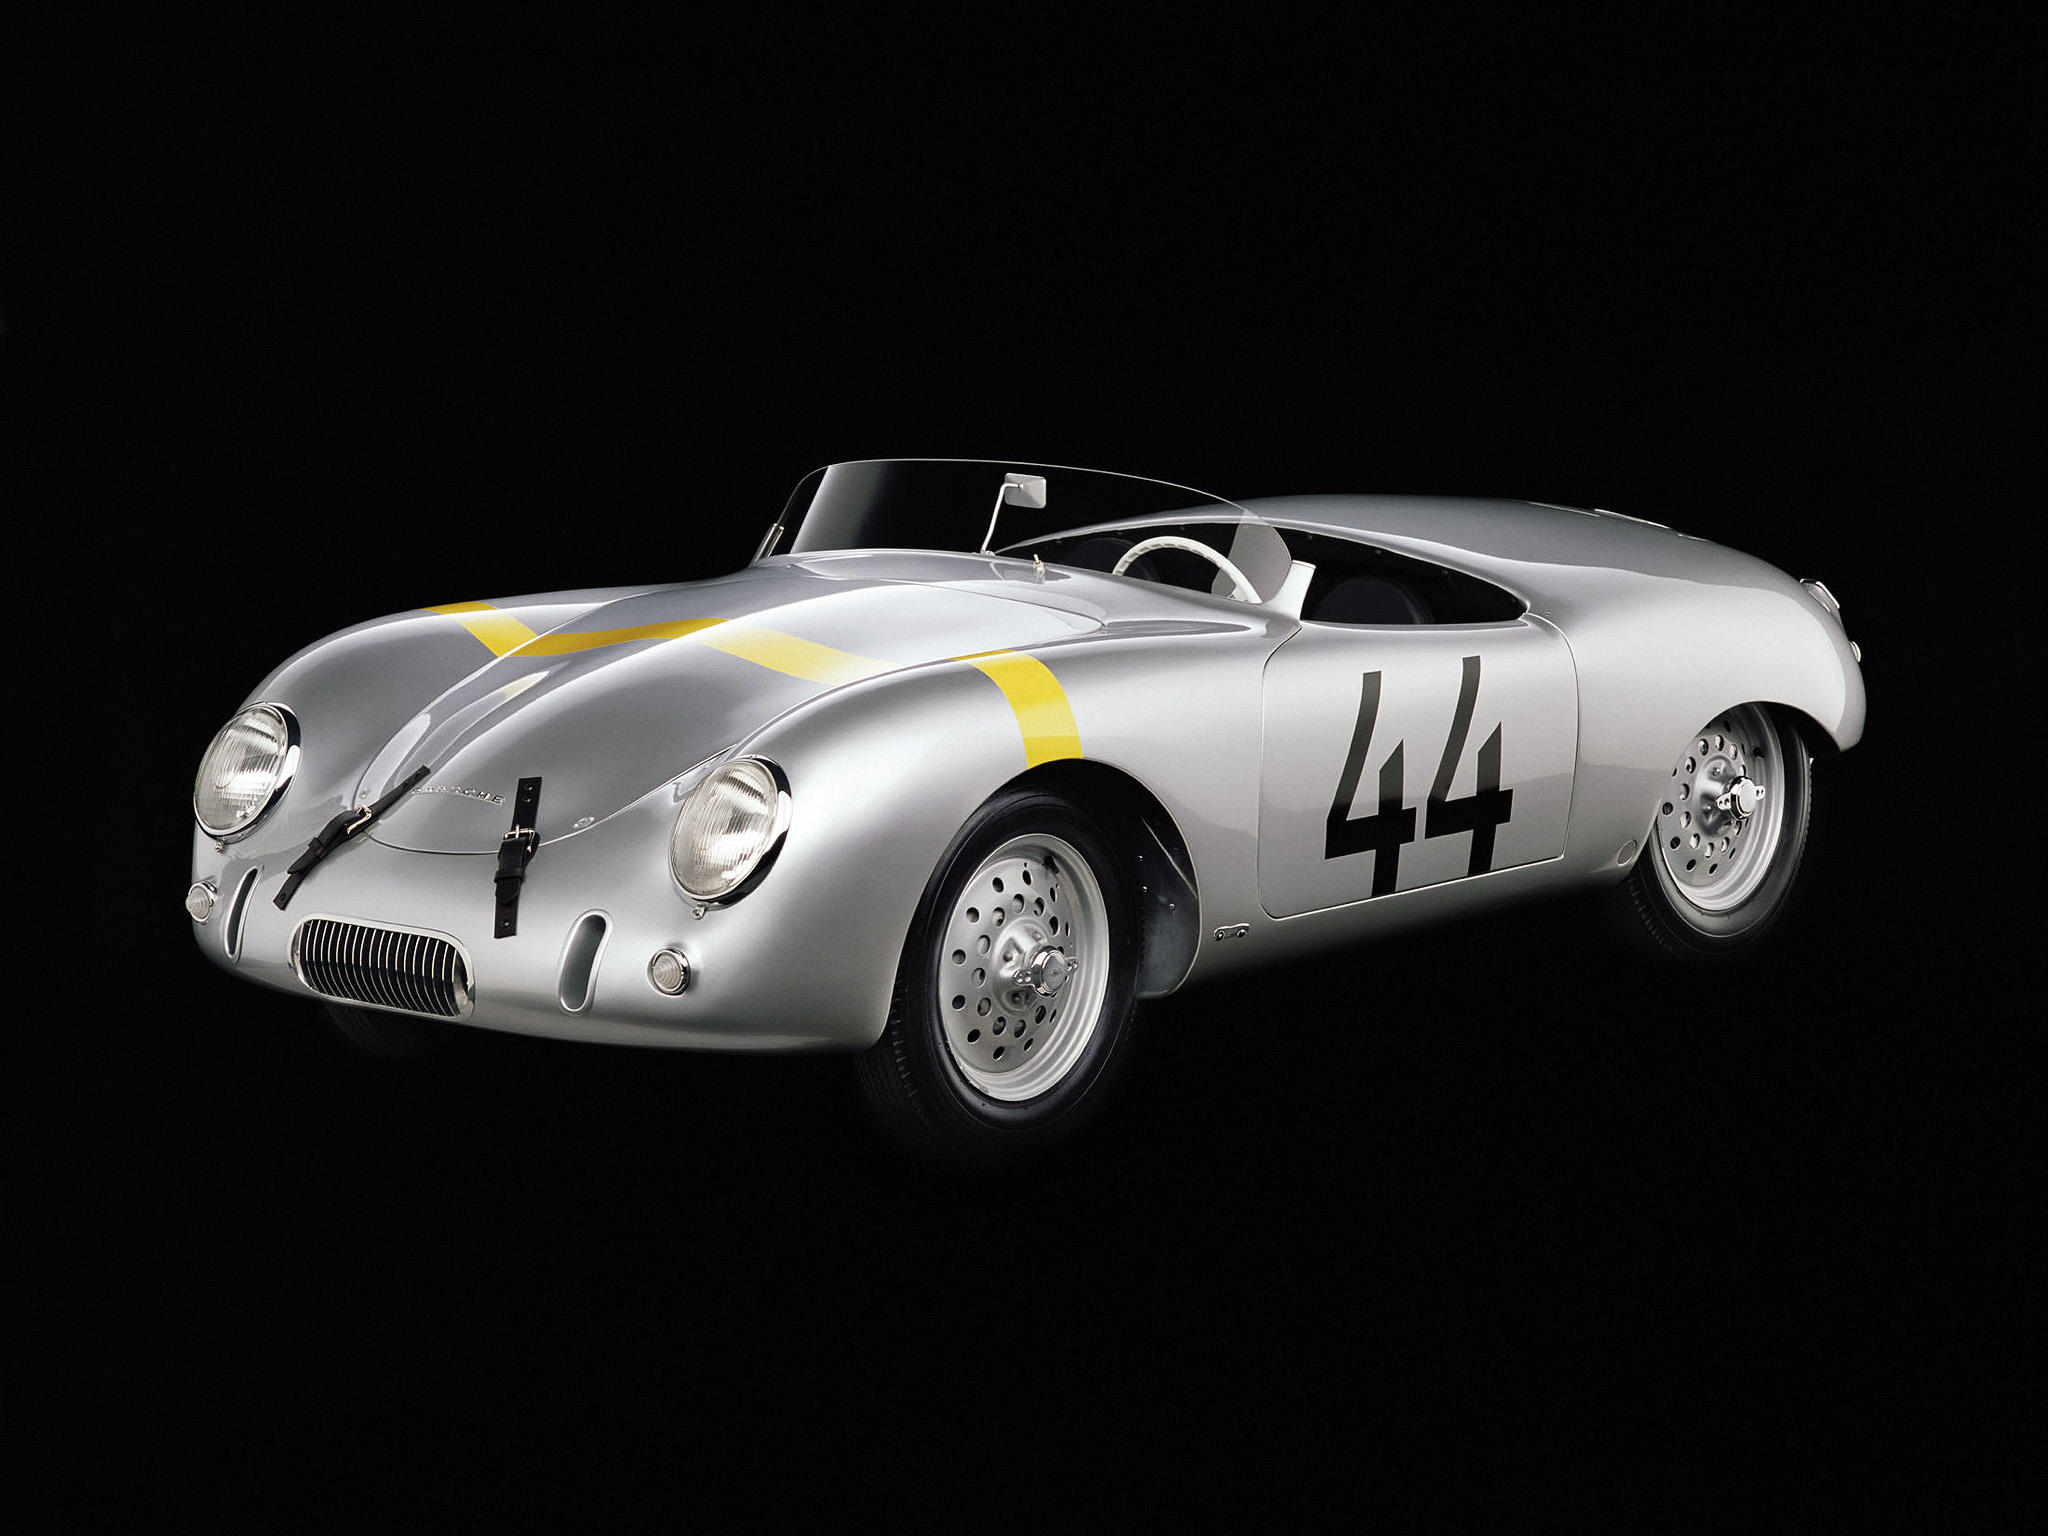 1952, Glockler, Porsche, 356, Weidenhausen, Roadster, Race, Racing, Retro Wallpaper